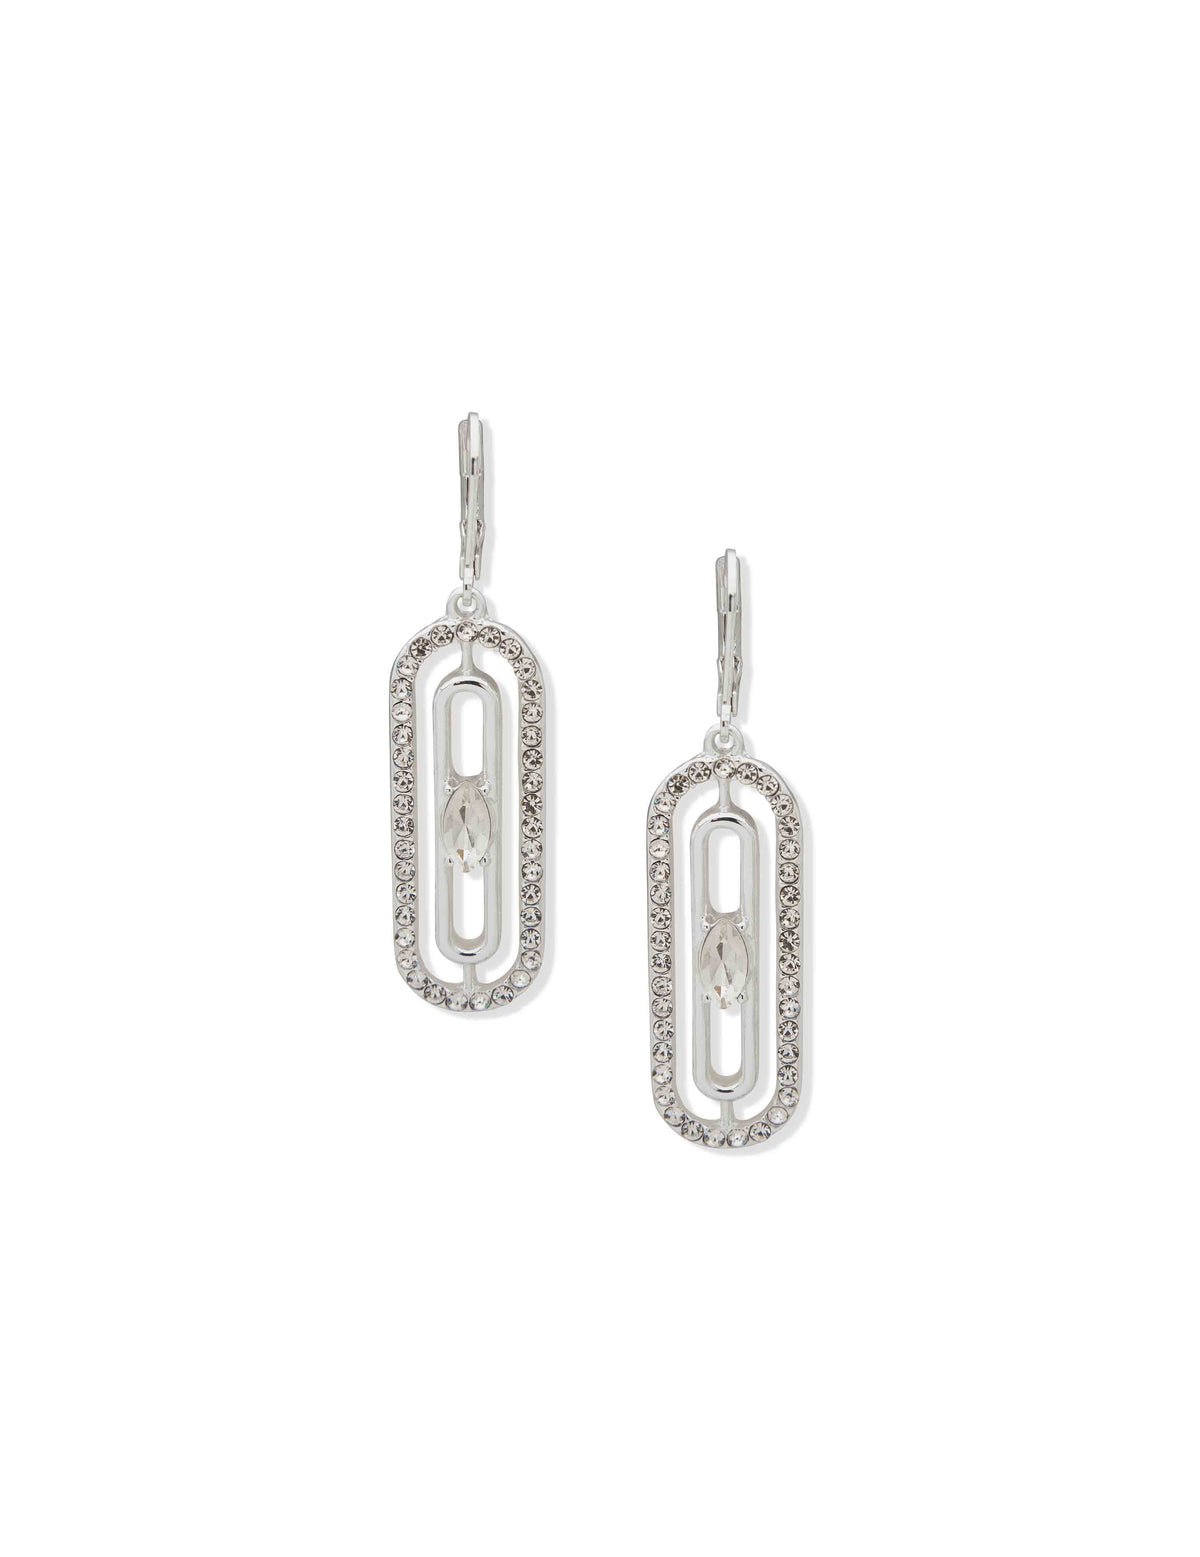 Anne Klein Silver Tone Stone Orbital Silver Crystal Earrings